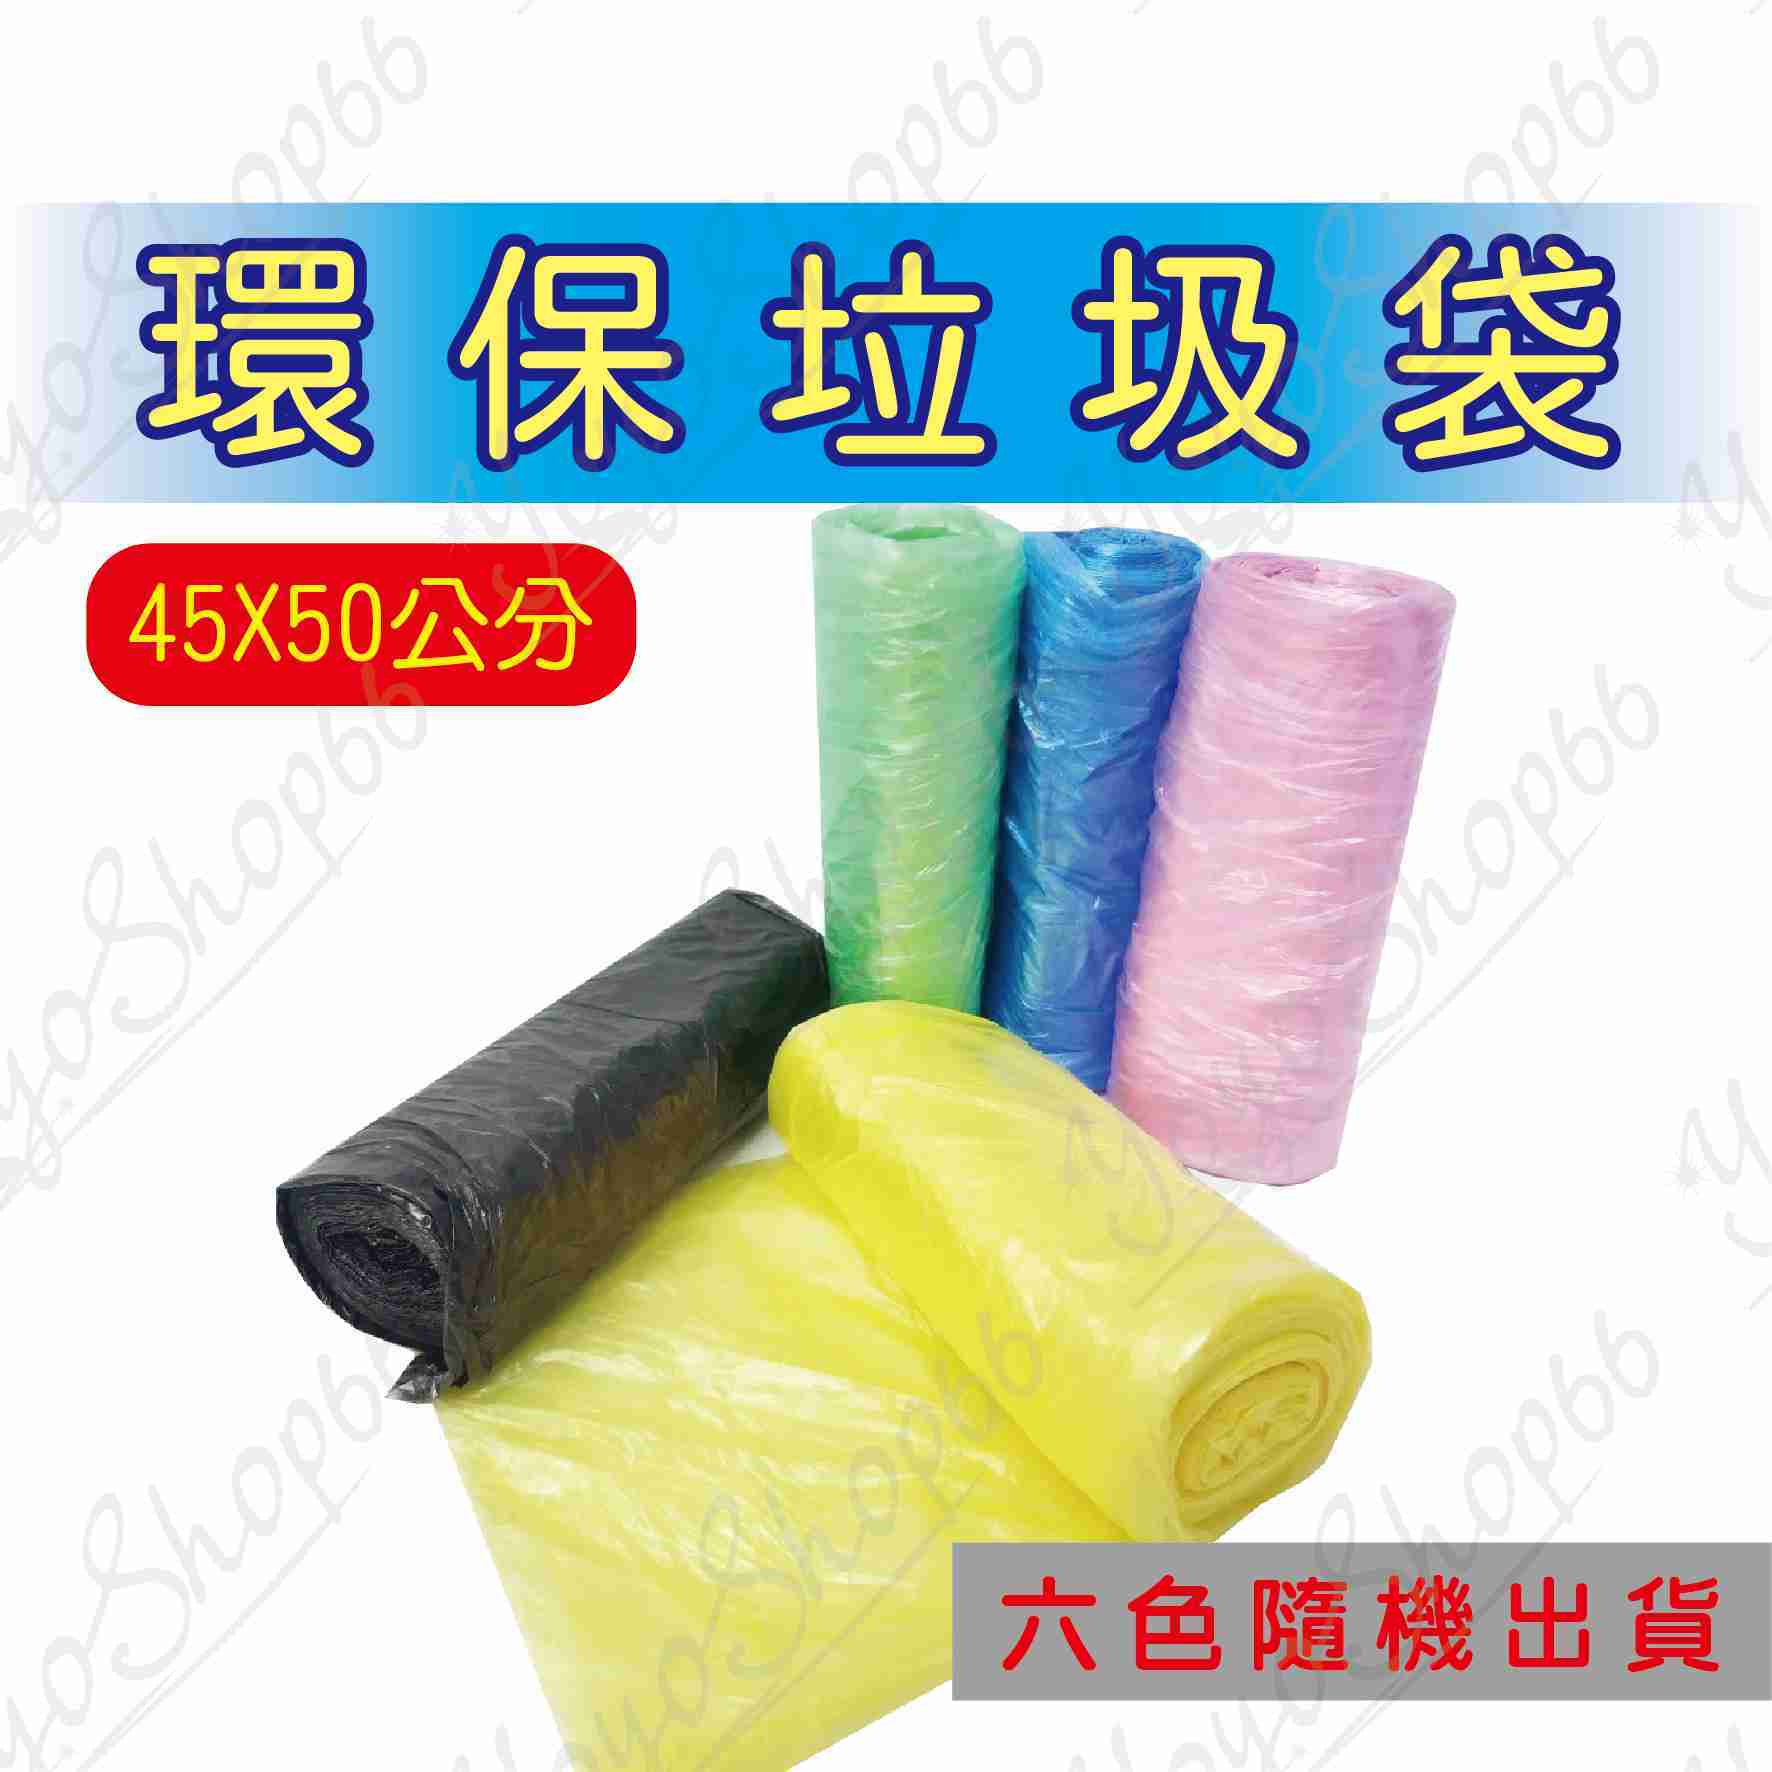 #643 彩色垃圾袋 (1捲) 環保垃圾袋 塑膠袋 家用點斷式垃圾袋 浴室垃圾袋 廚房收納塑料袋【愛尚生活】